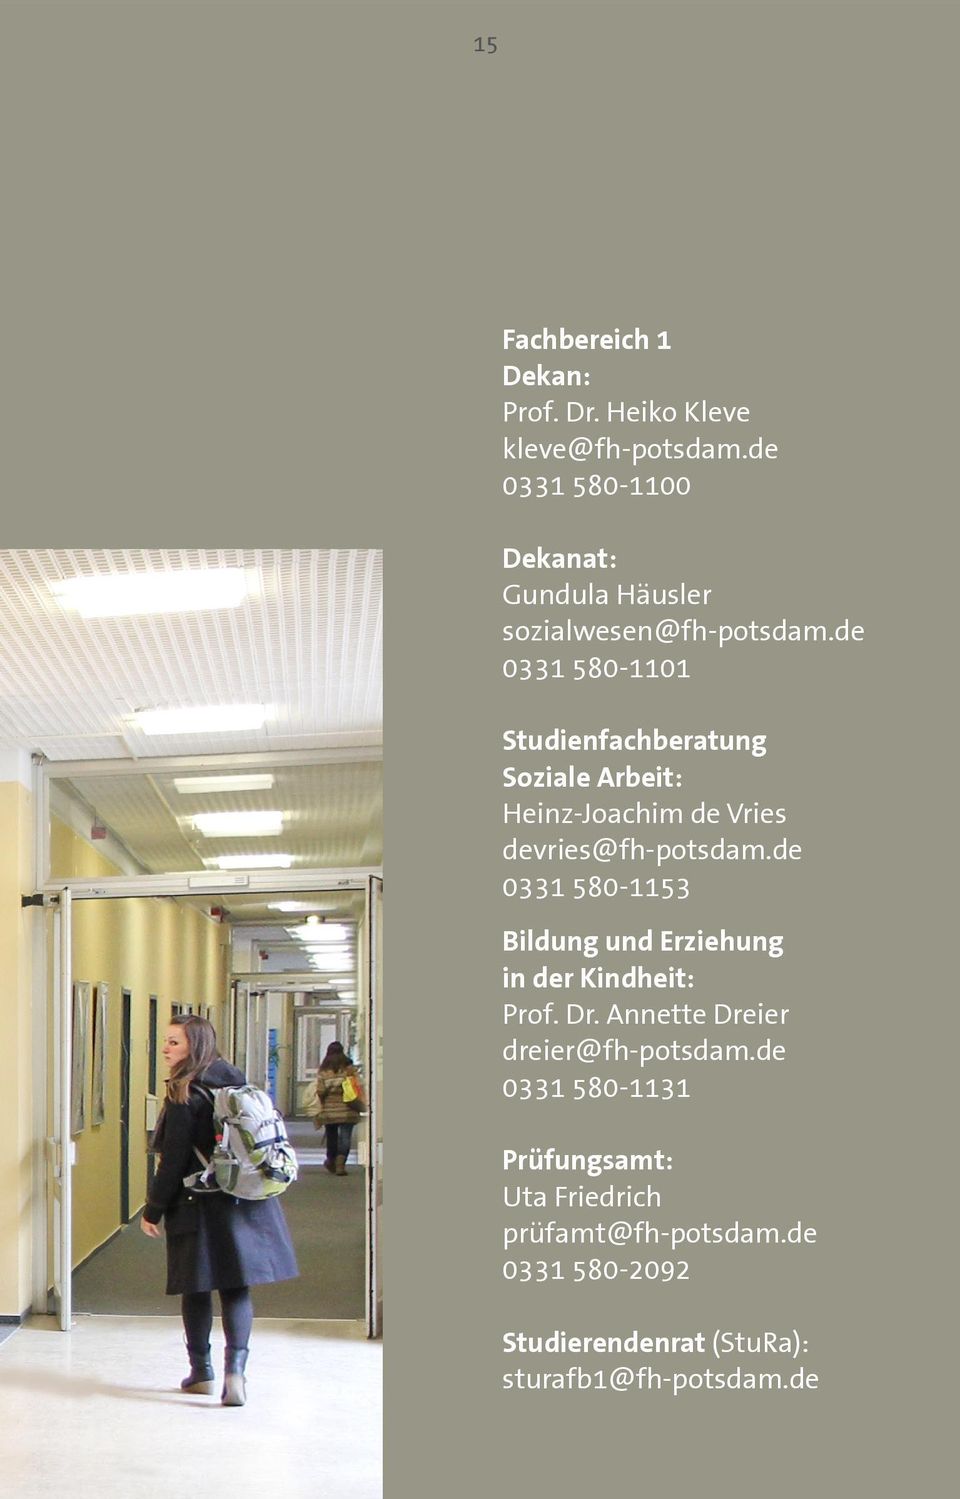 de 0331 580-1101 Studienfachberatung Soziale Arbeit: Heinz-Joachim de Vries devries@fh-potsdam.